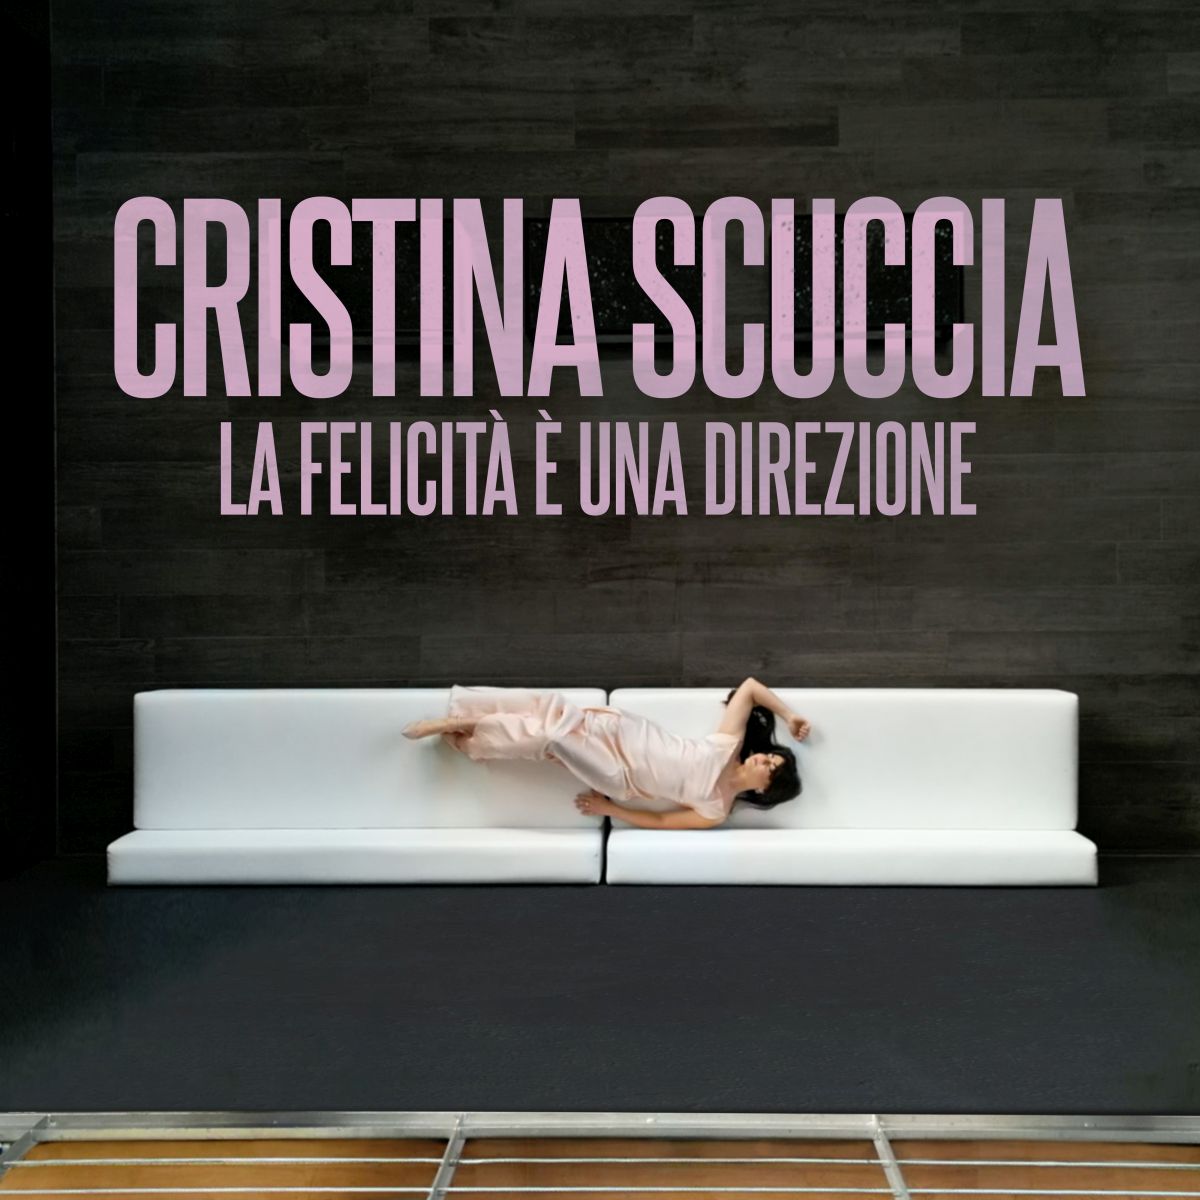 La felicità è una direzione è il nuovo singolo di Cristina Scuccia